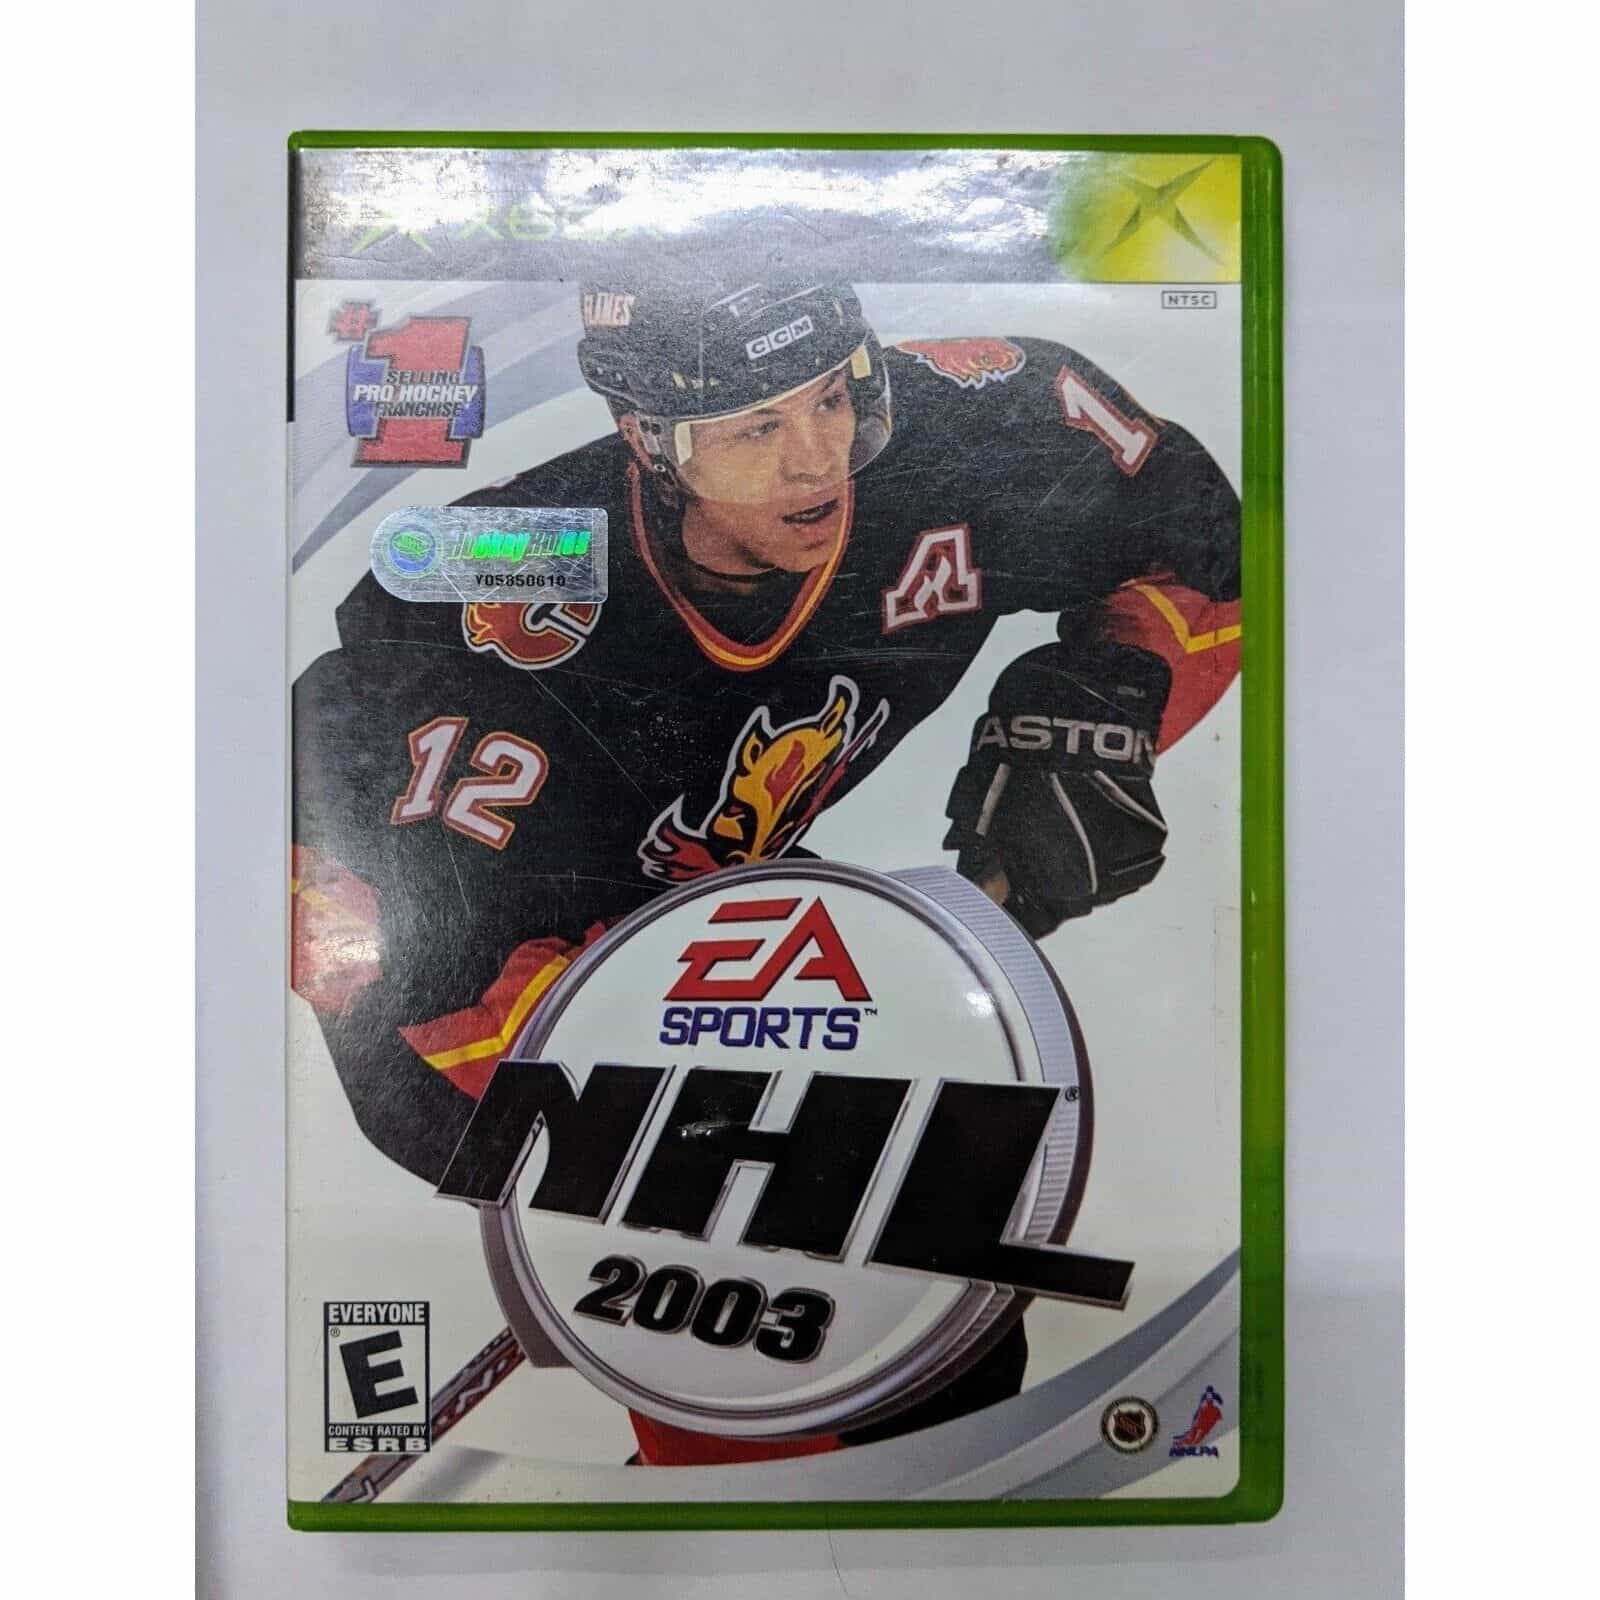 NHL 03 for Xbox Original